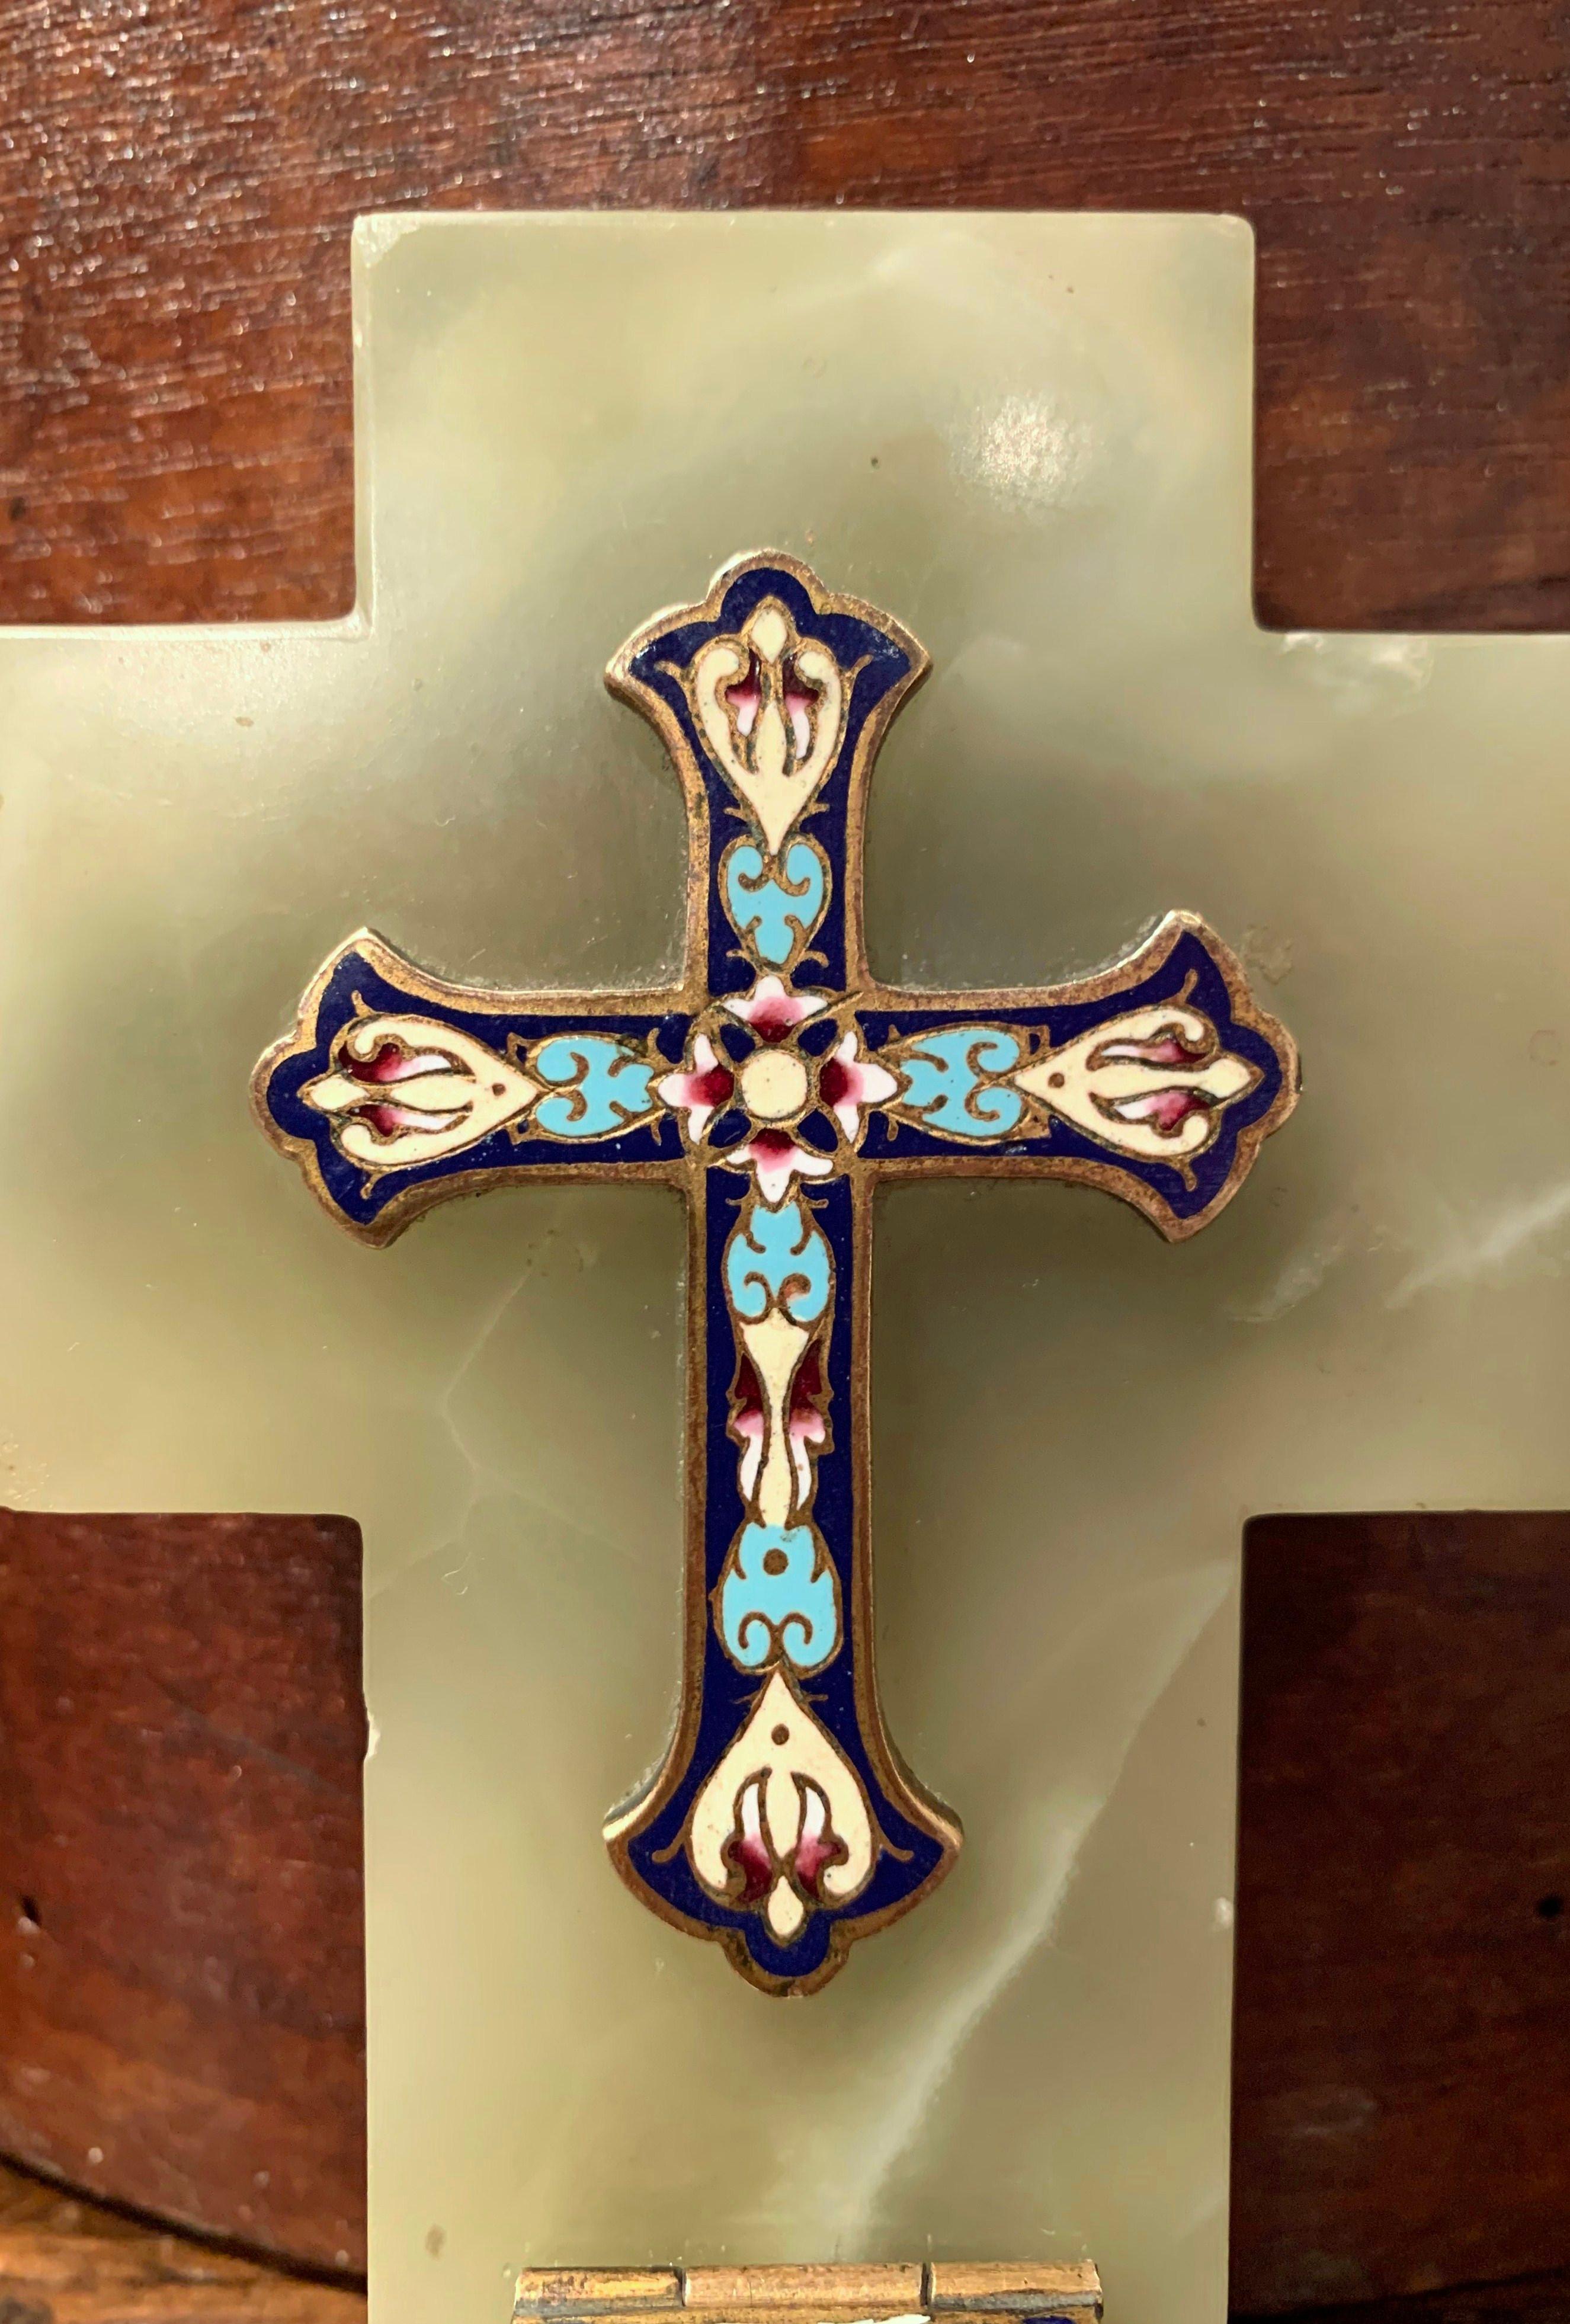 Cette croix colorée en marbre et laiton avec récipient d'eau bénite a été créée en France, vers 1880. La croix antique présente un magnifique travail cloisonné complexe avec de l'émail, de la pierre et du bronze. Elle est montée sur une plaque de